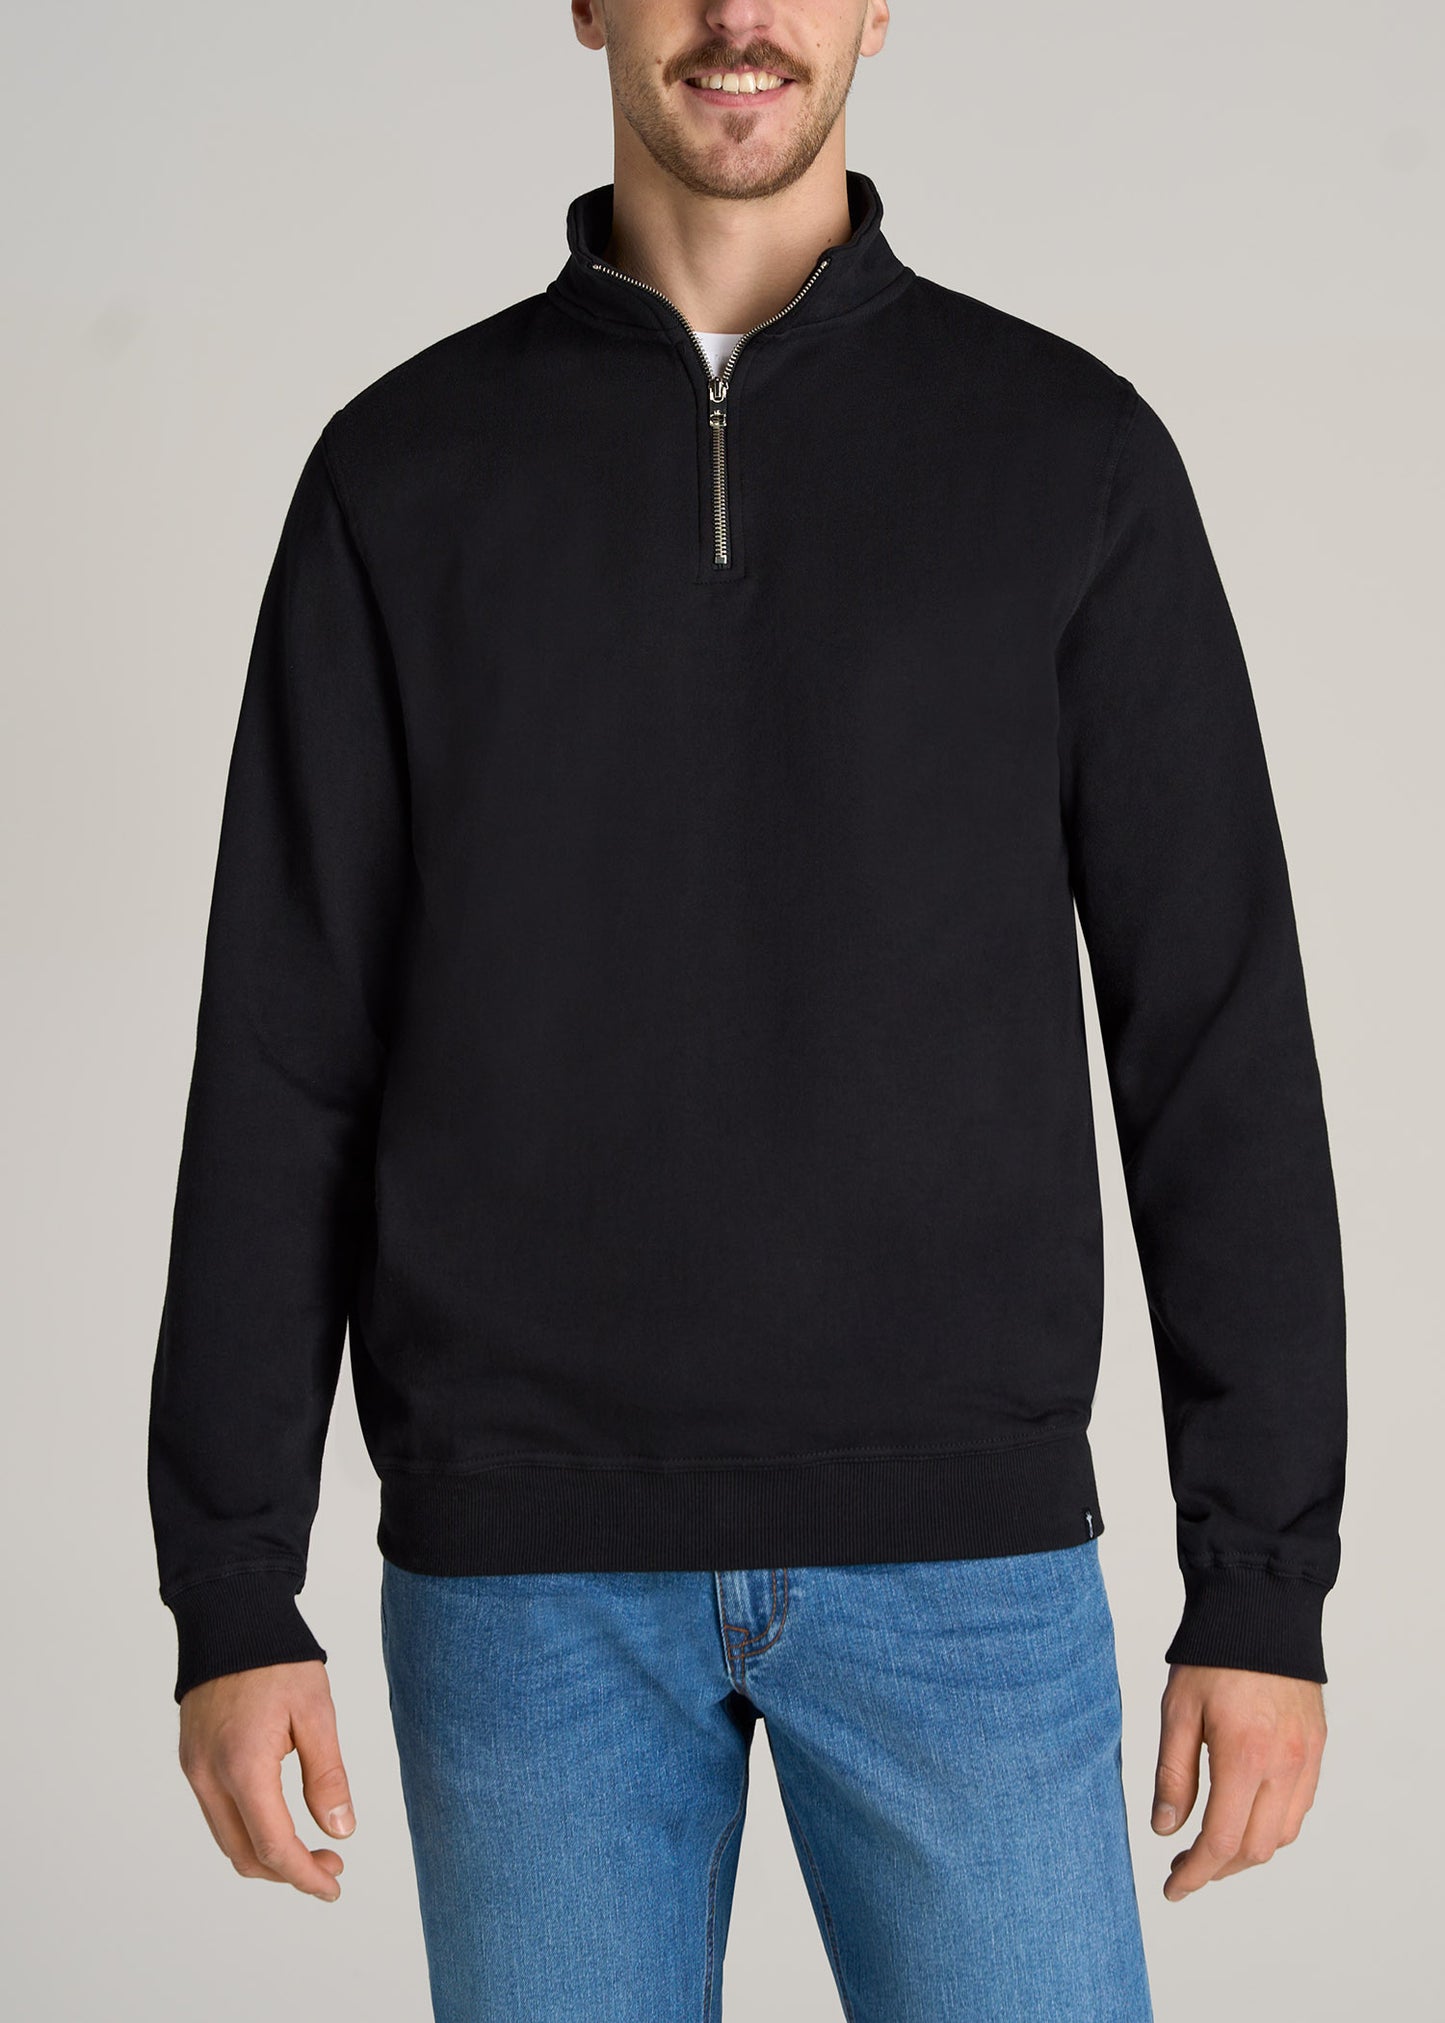 Wearever Fleece Quarter-Zip Tall Men's Sweatshirt in Black S / Tall / Black